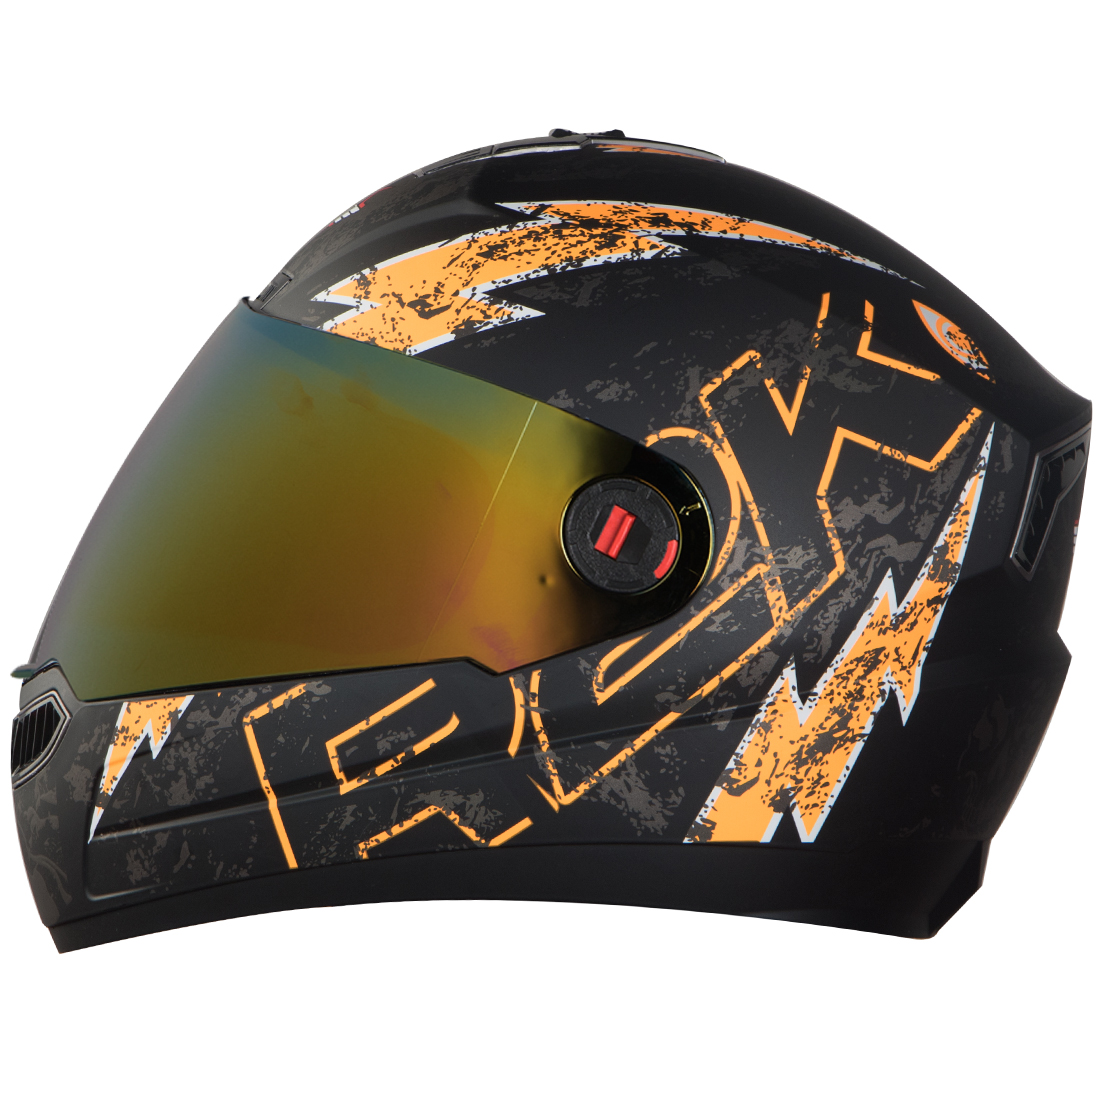 Steelbird SBA-1 R2K Live Full Face Helmet In Matt Finish (Matt Black Orange With Chrome Gold Visor)